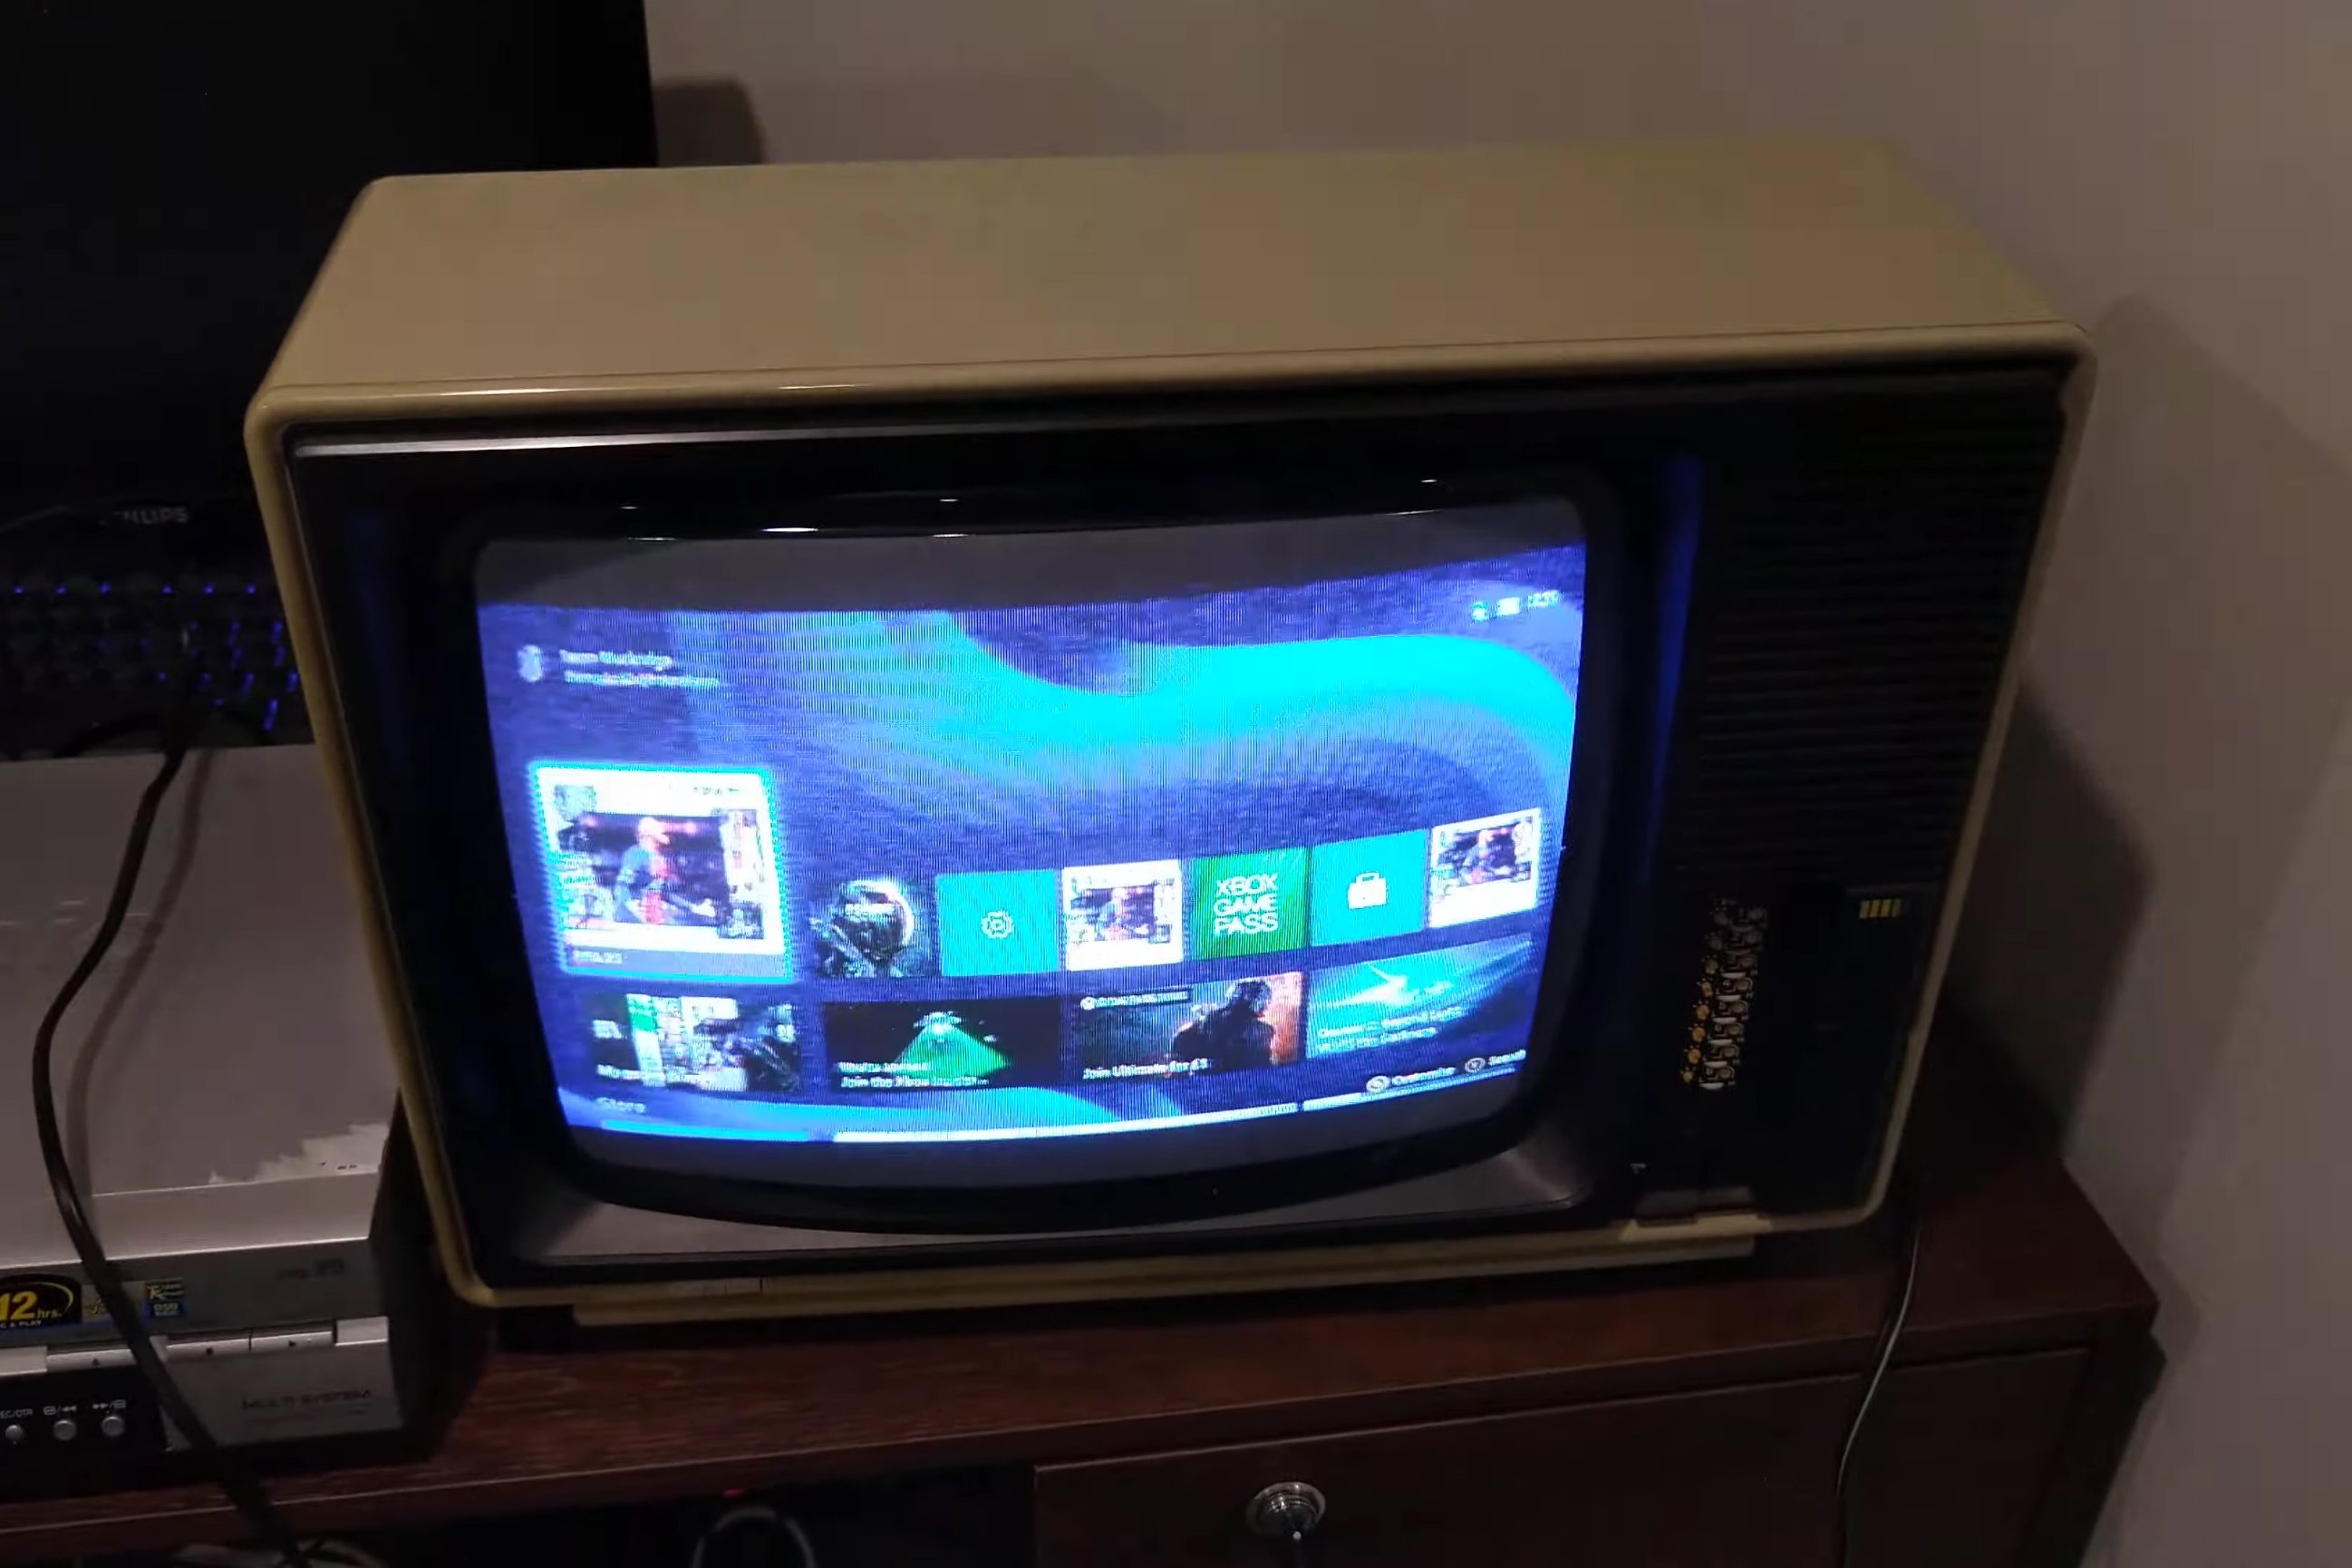 Alguém ligou o Xbox Series X em uma TV de tubo